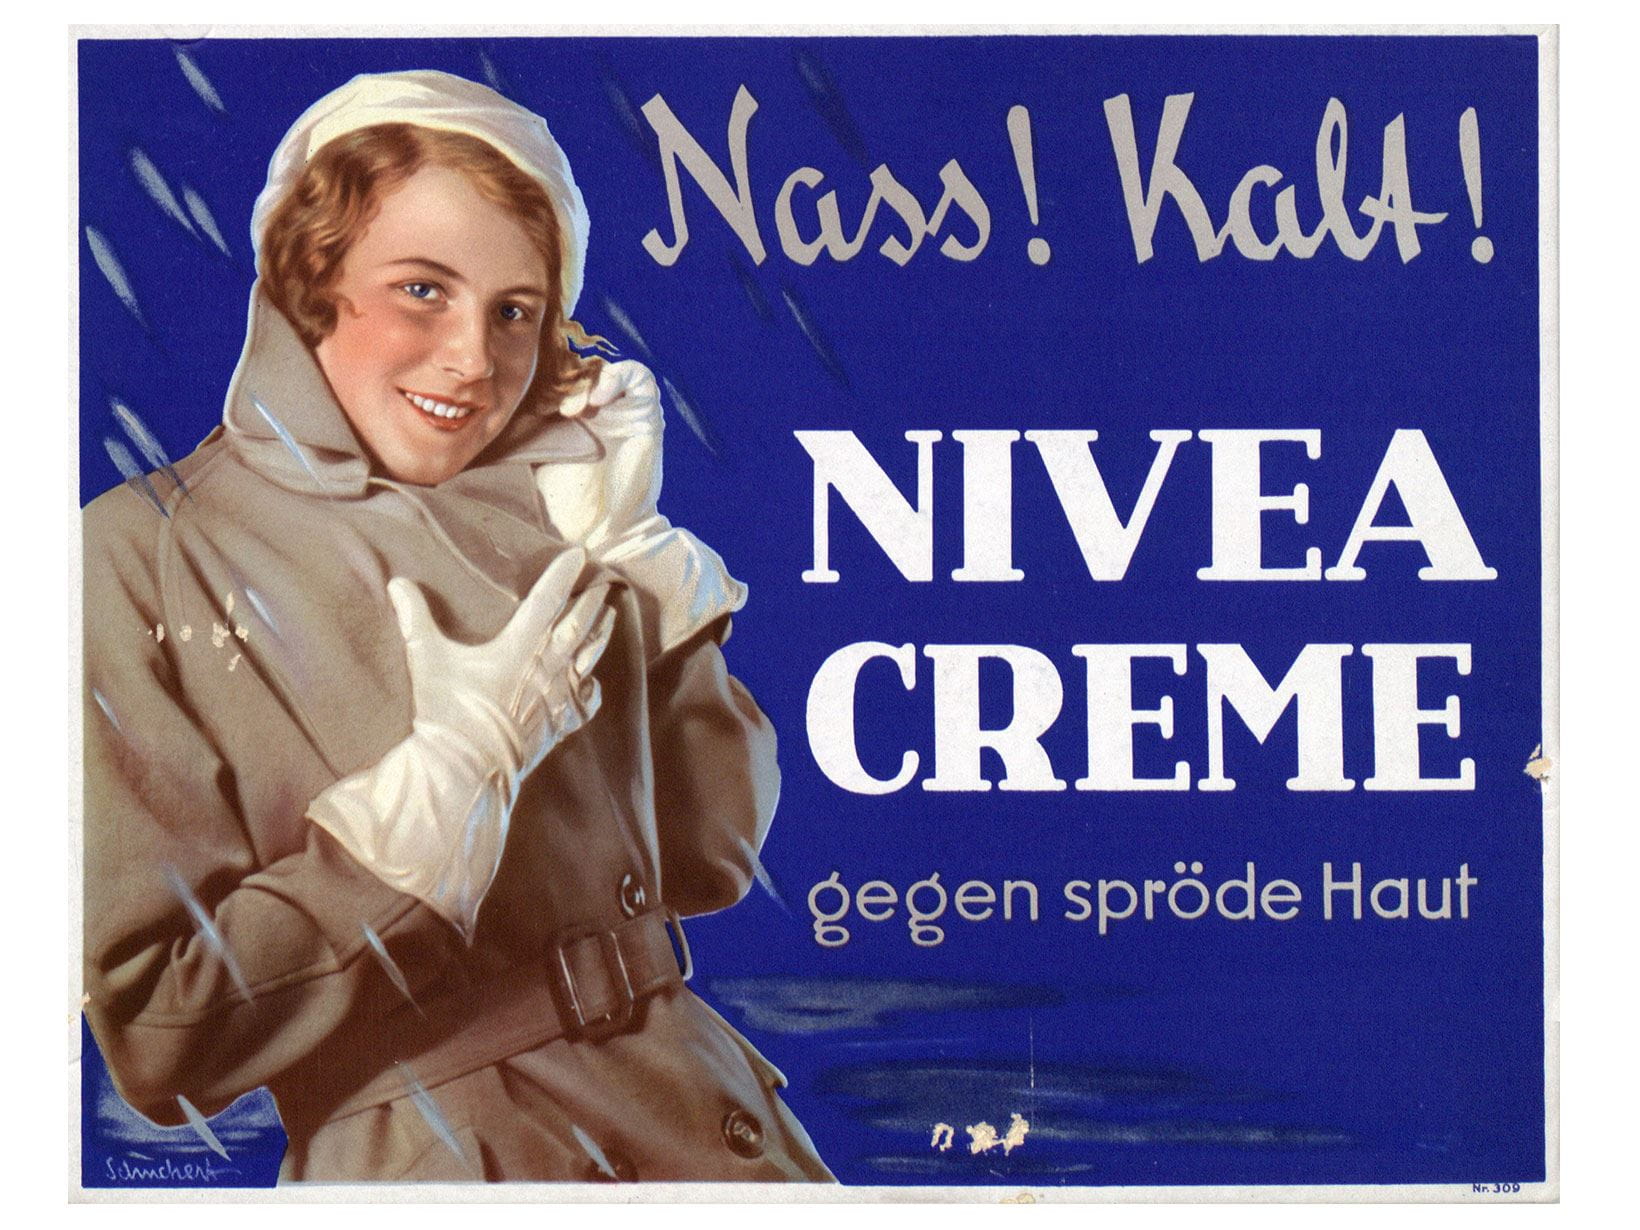 Auch bei Nässe und Kälte hilft NIVEA gegen spröde Haut. Werbeplakat von 1932.